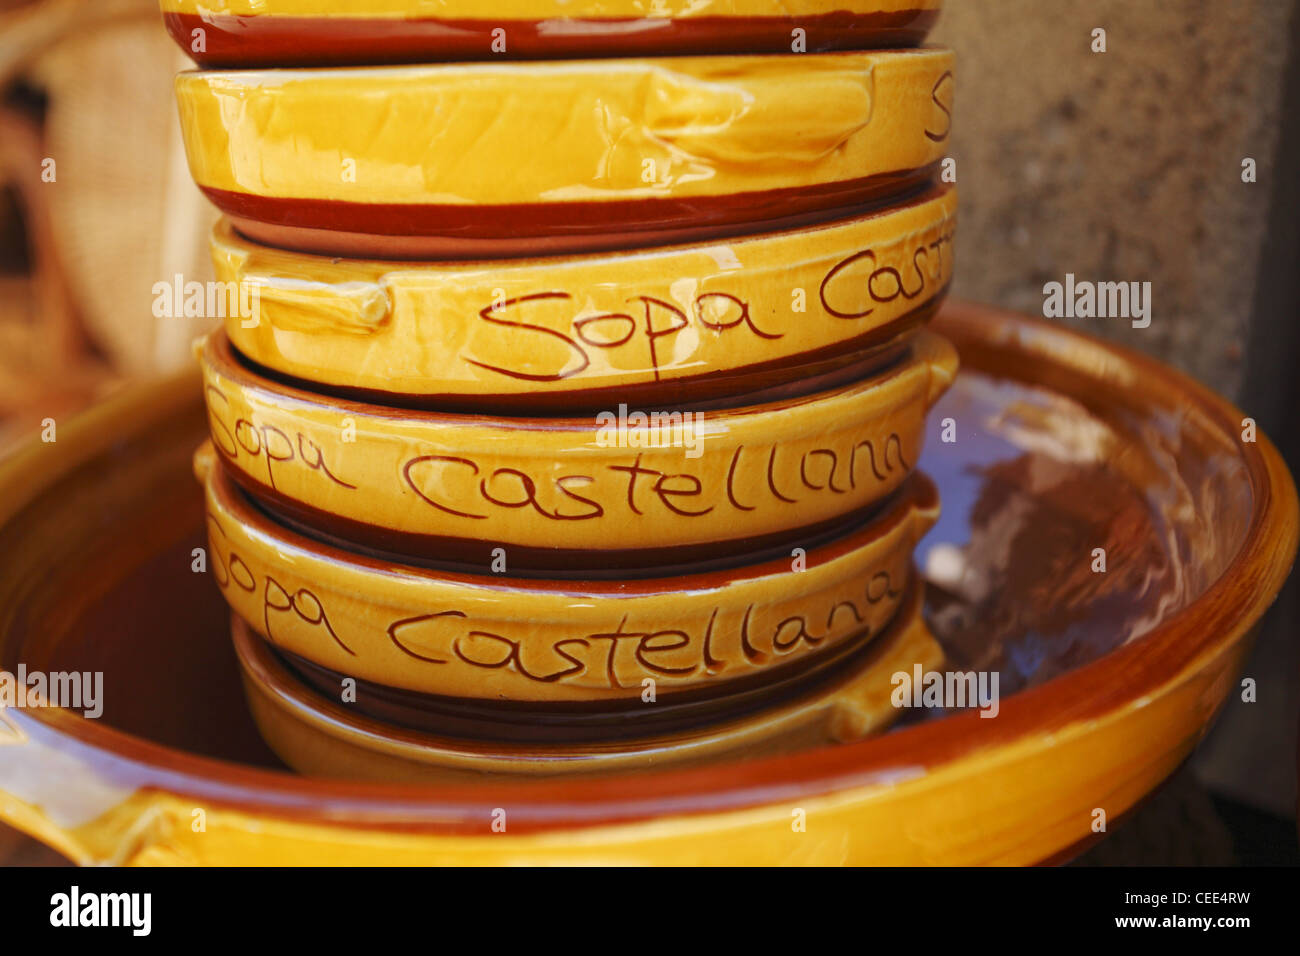 Bols en céramique pour Sopa Castellana, la soupe castillane, Espagne Banque D'Images